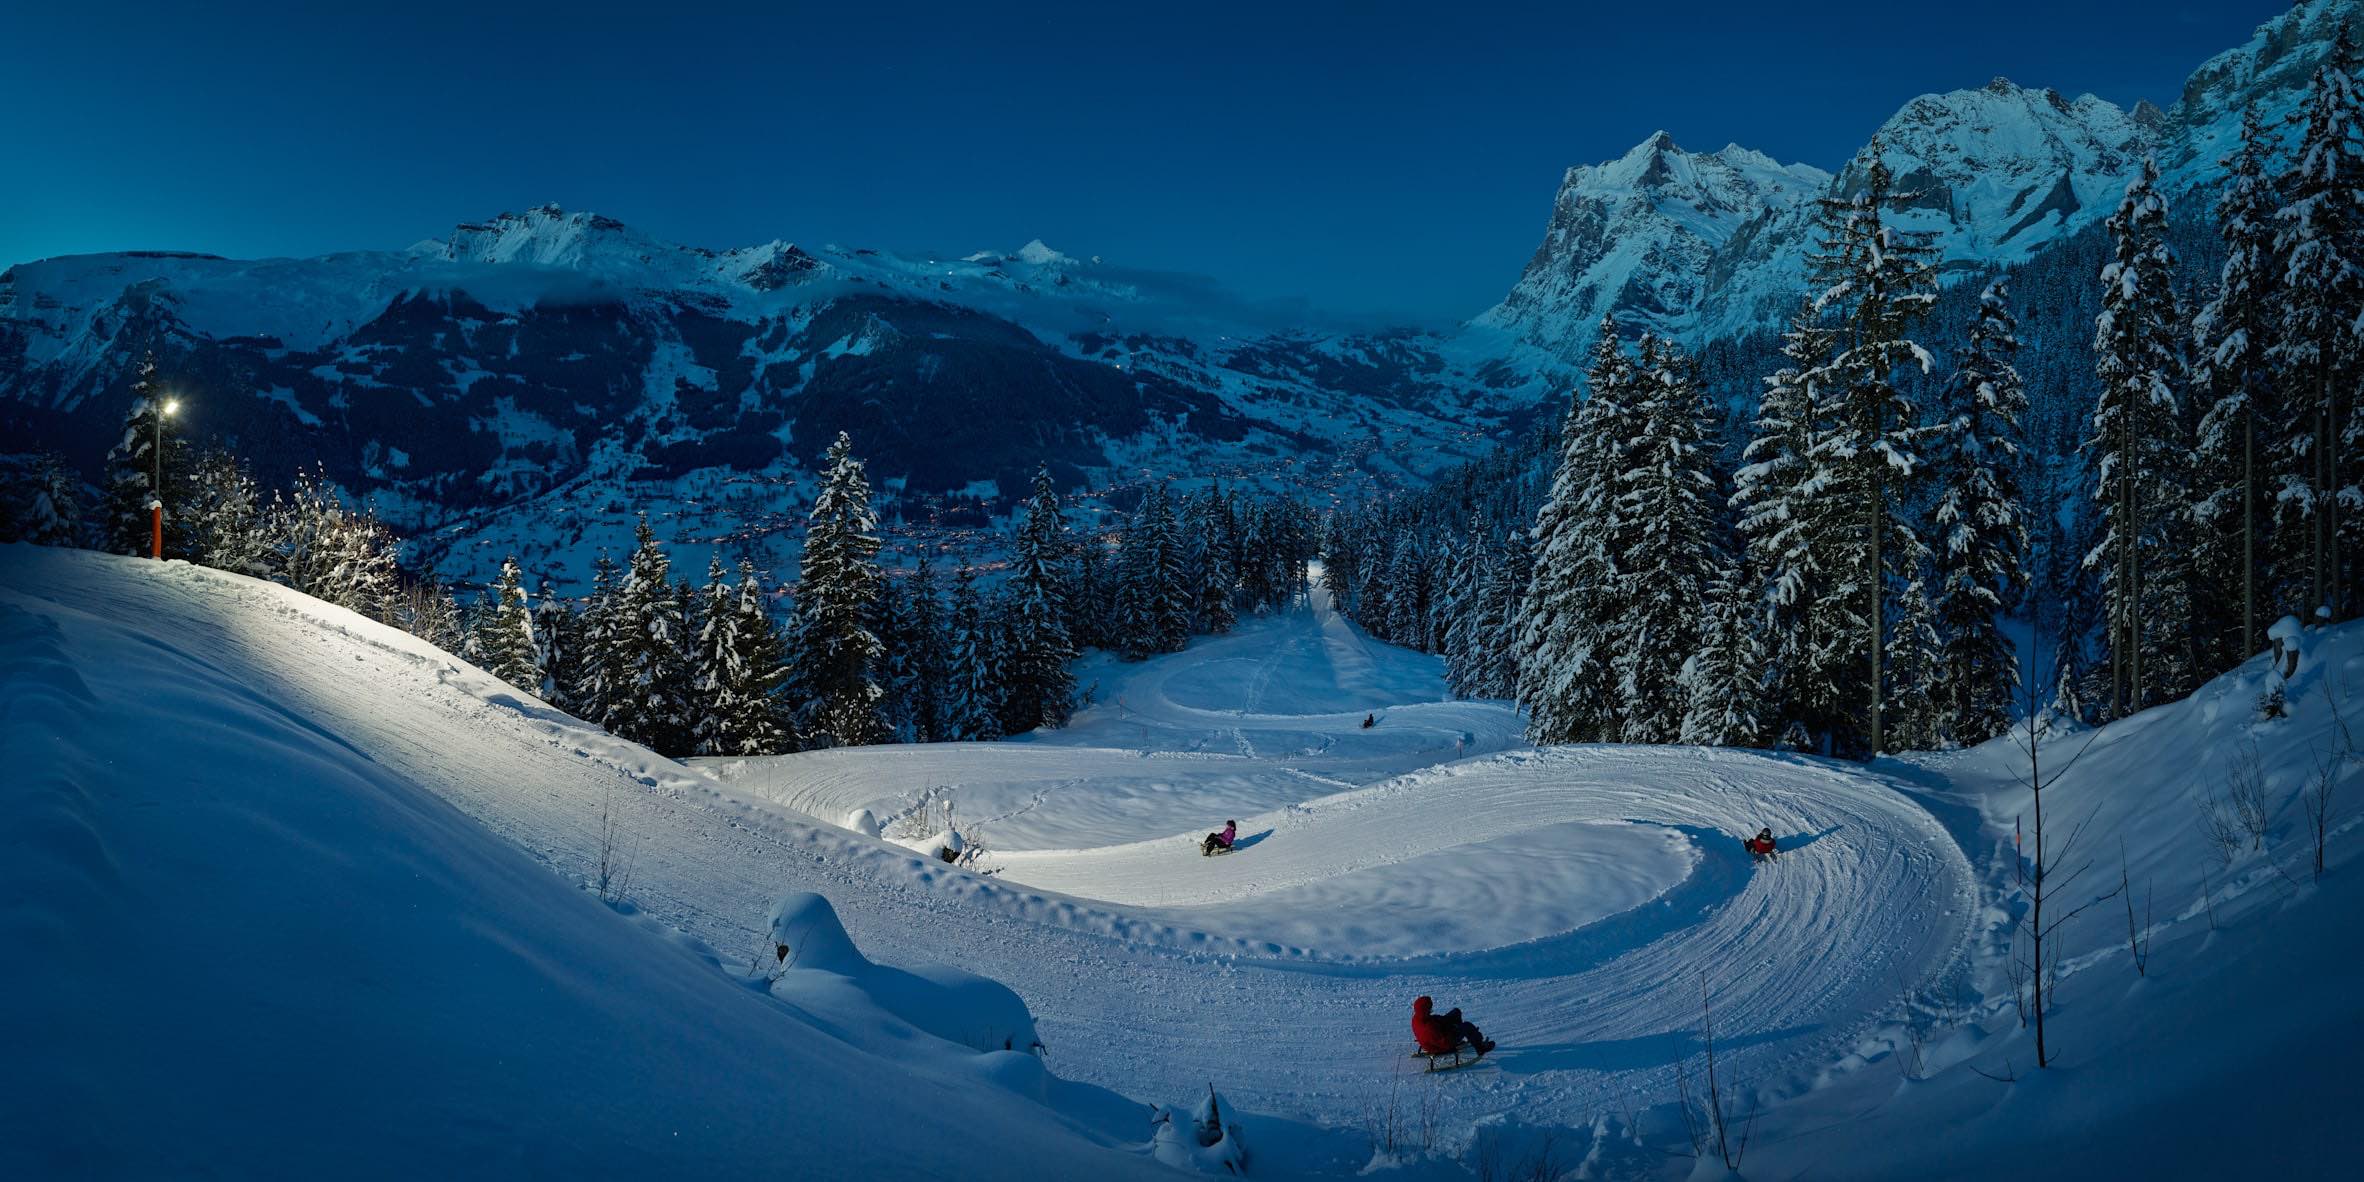 dicas do que fazer no inverno na suiça